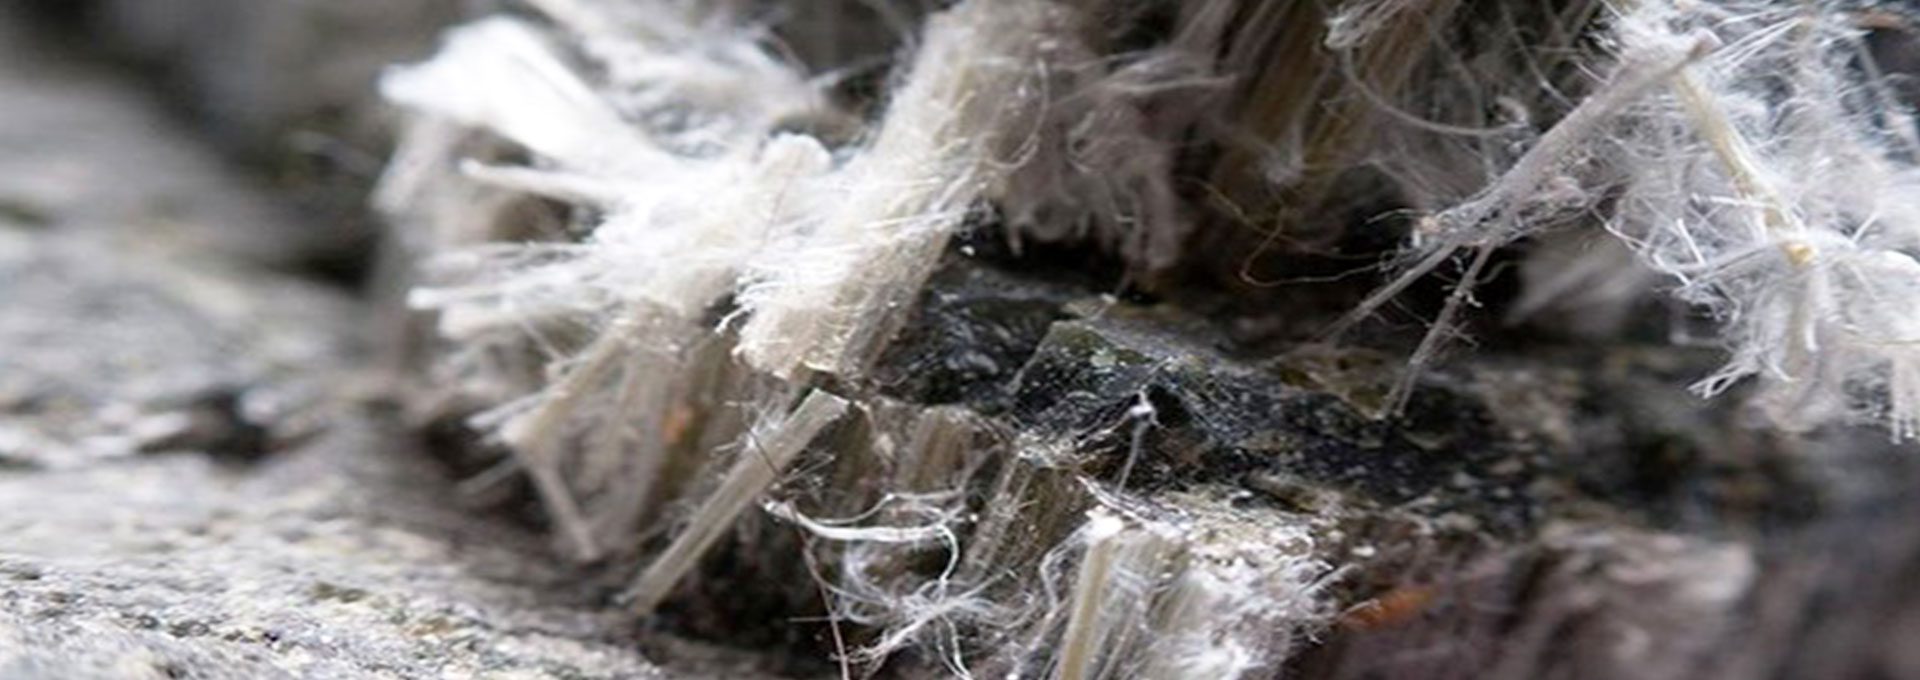 asbestos removal Fort Lauderdale, asbestos inspection Fort Lauderdale, asbestos cleanup Fort Lauderdale, asbestos test Fort Lauderdale, asbestos remediation Fort Lauderdale, asbestos testing Fort Lauderdale, mildew removal Fort Lauderdale, mildew inspection Fort Lauderdale, mildew cleanup Fort Lauderdale,